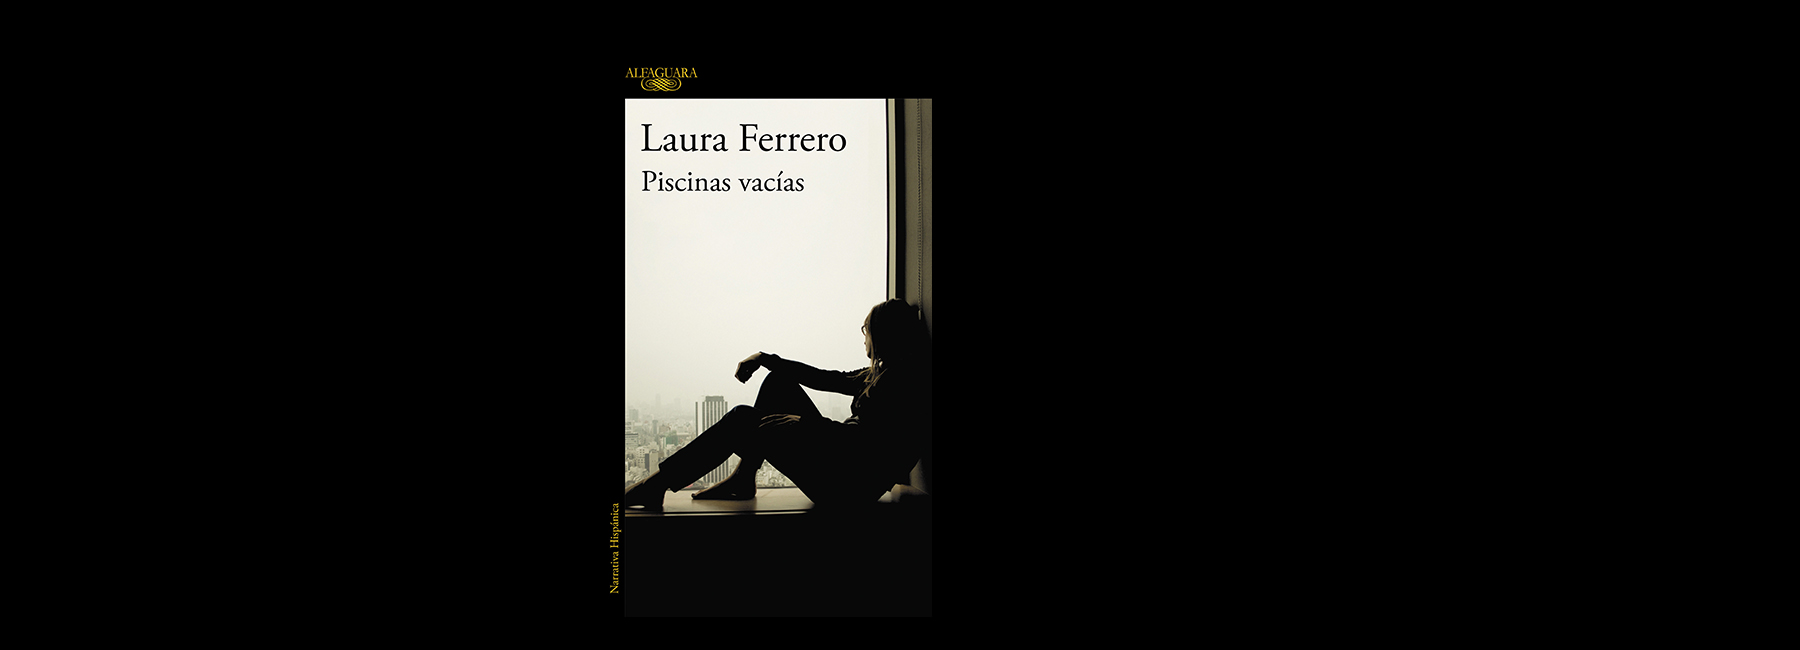 ENTREVISTA  Laura Ferrero: La literatura es una gran